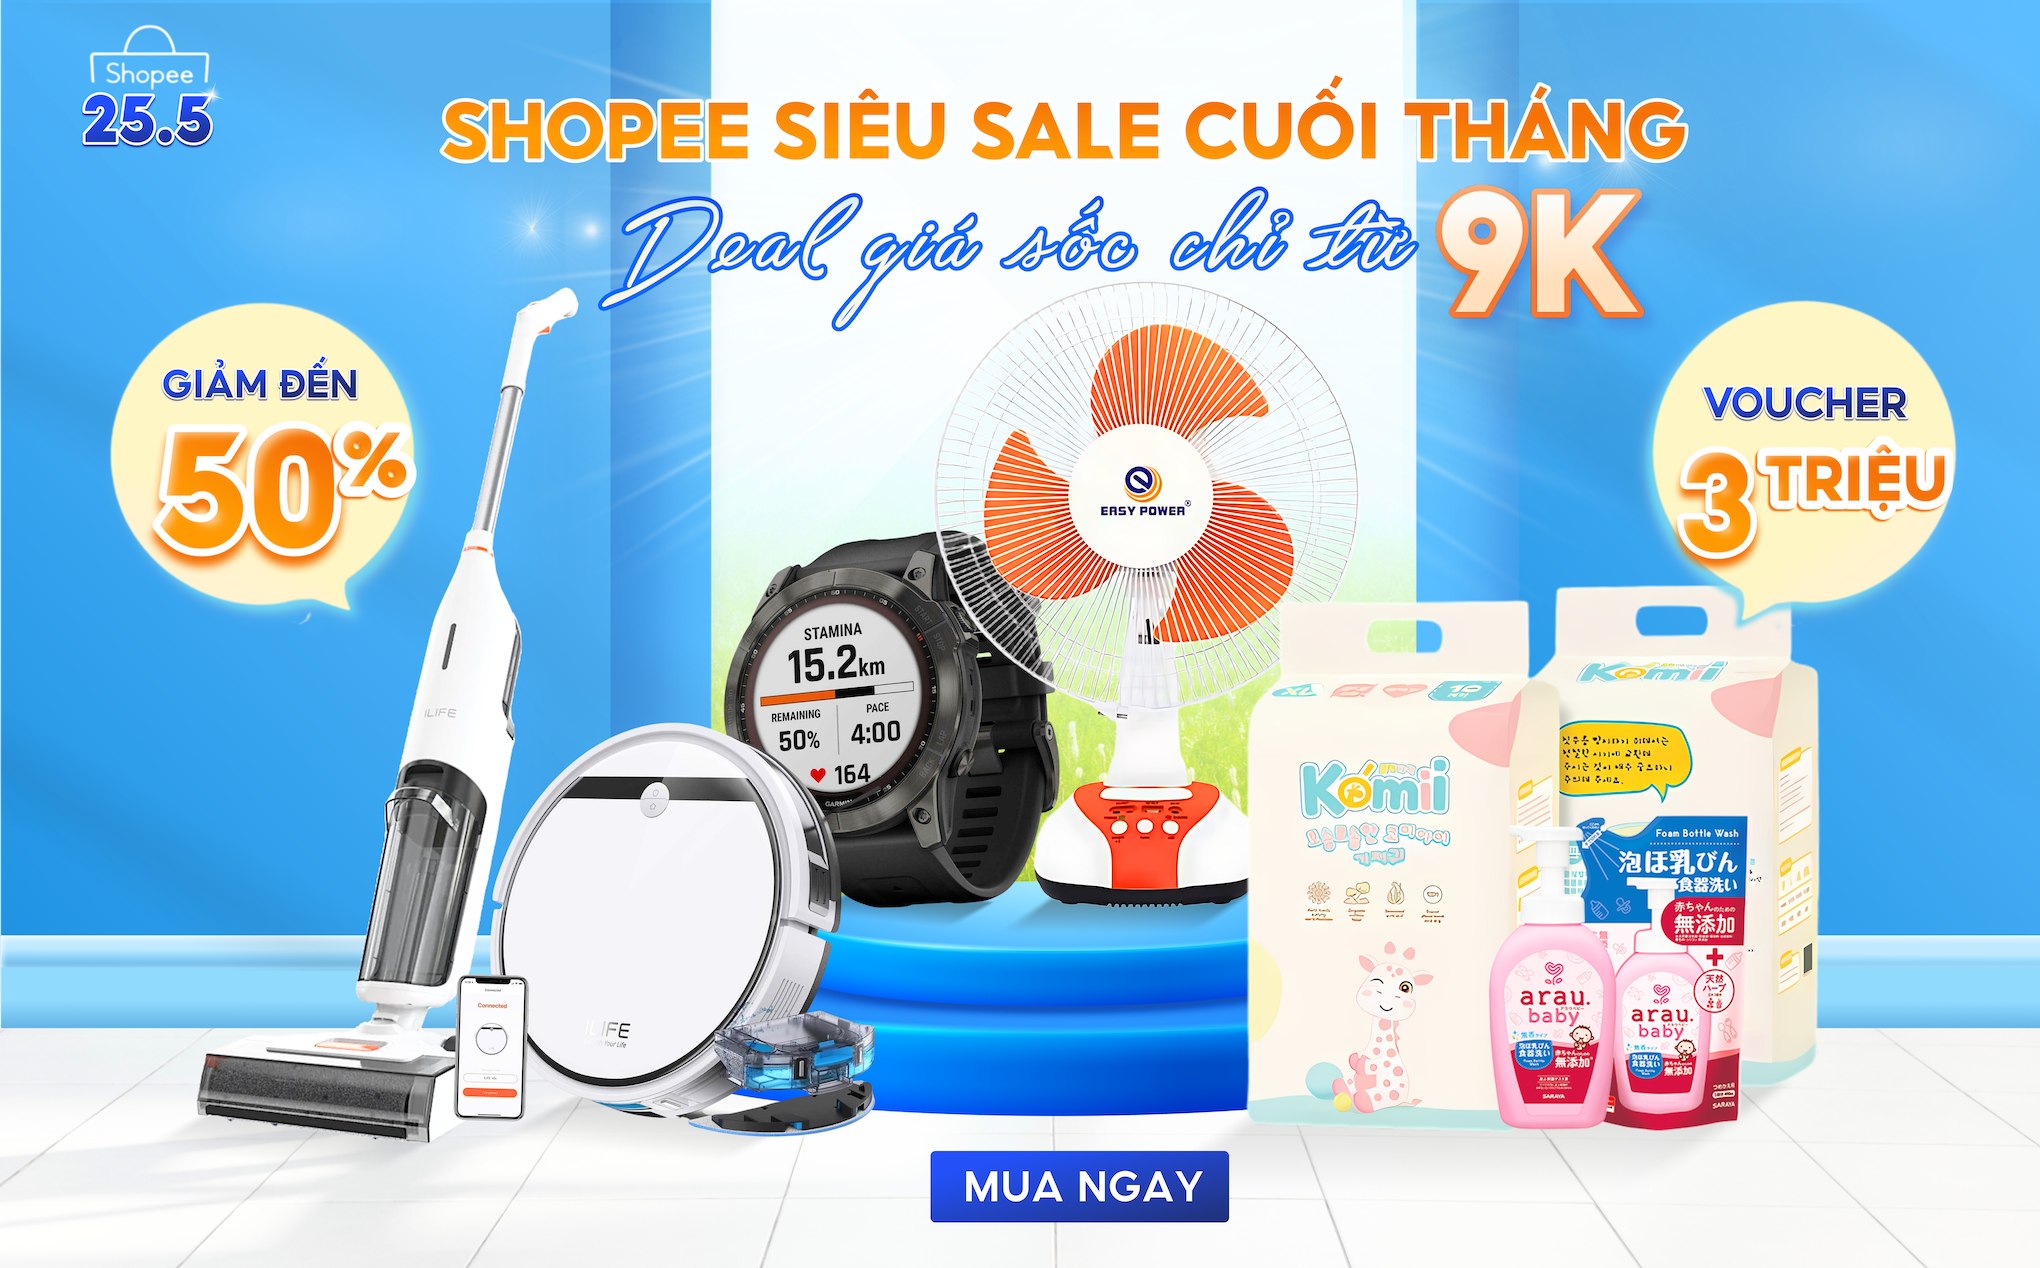 [QC] Shopee siêu sale cuối tháng – Deal sốc chỉ từ 9K